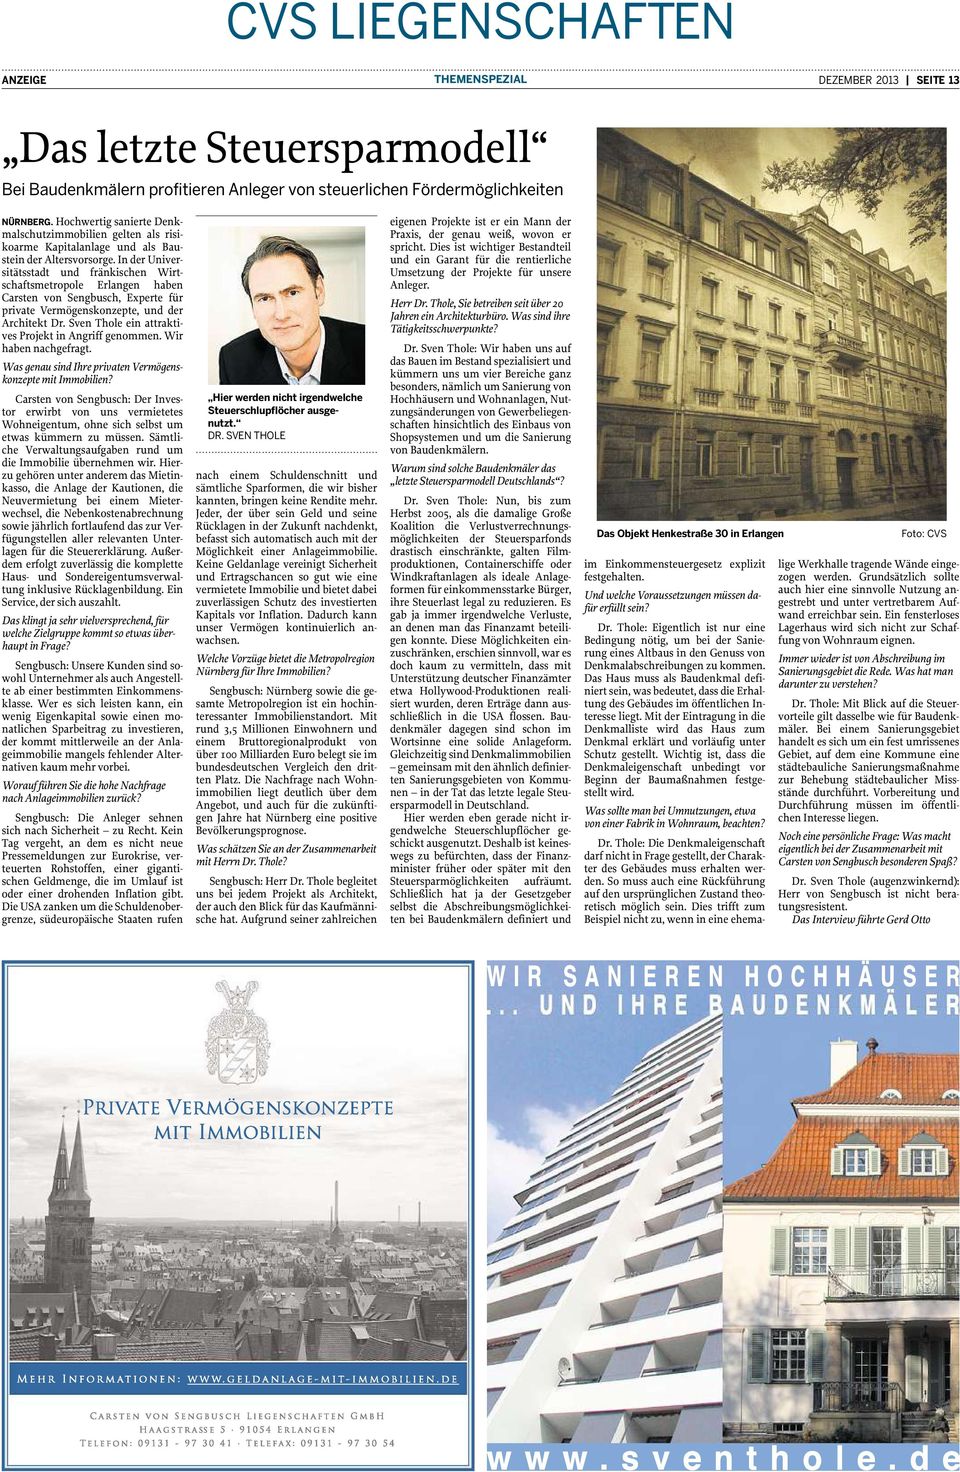 In der Universitätsstadt und fränkischen Wirtschaftsmetropole Erlangen haben Carsten von Sengbusch, Experte für private Vermögenskonzepte, und der Architekt Dr.